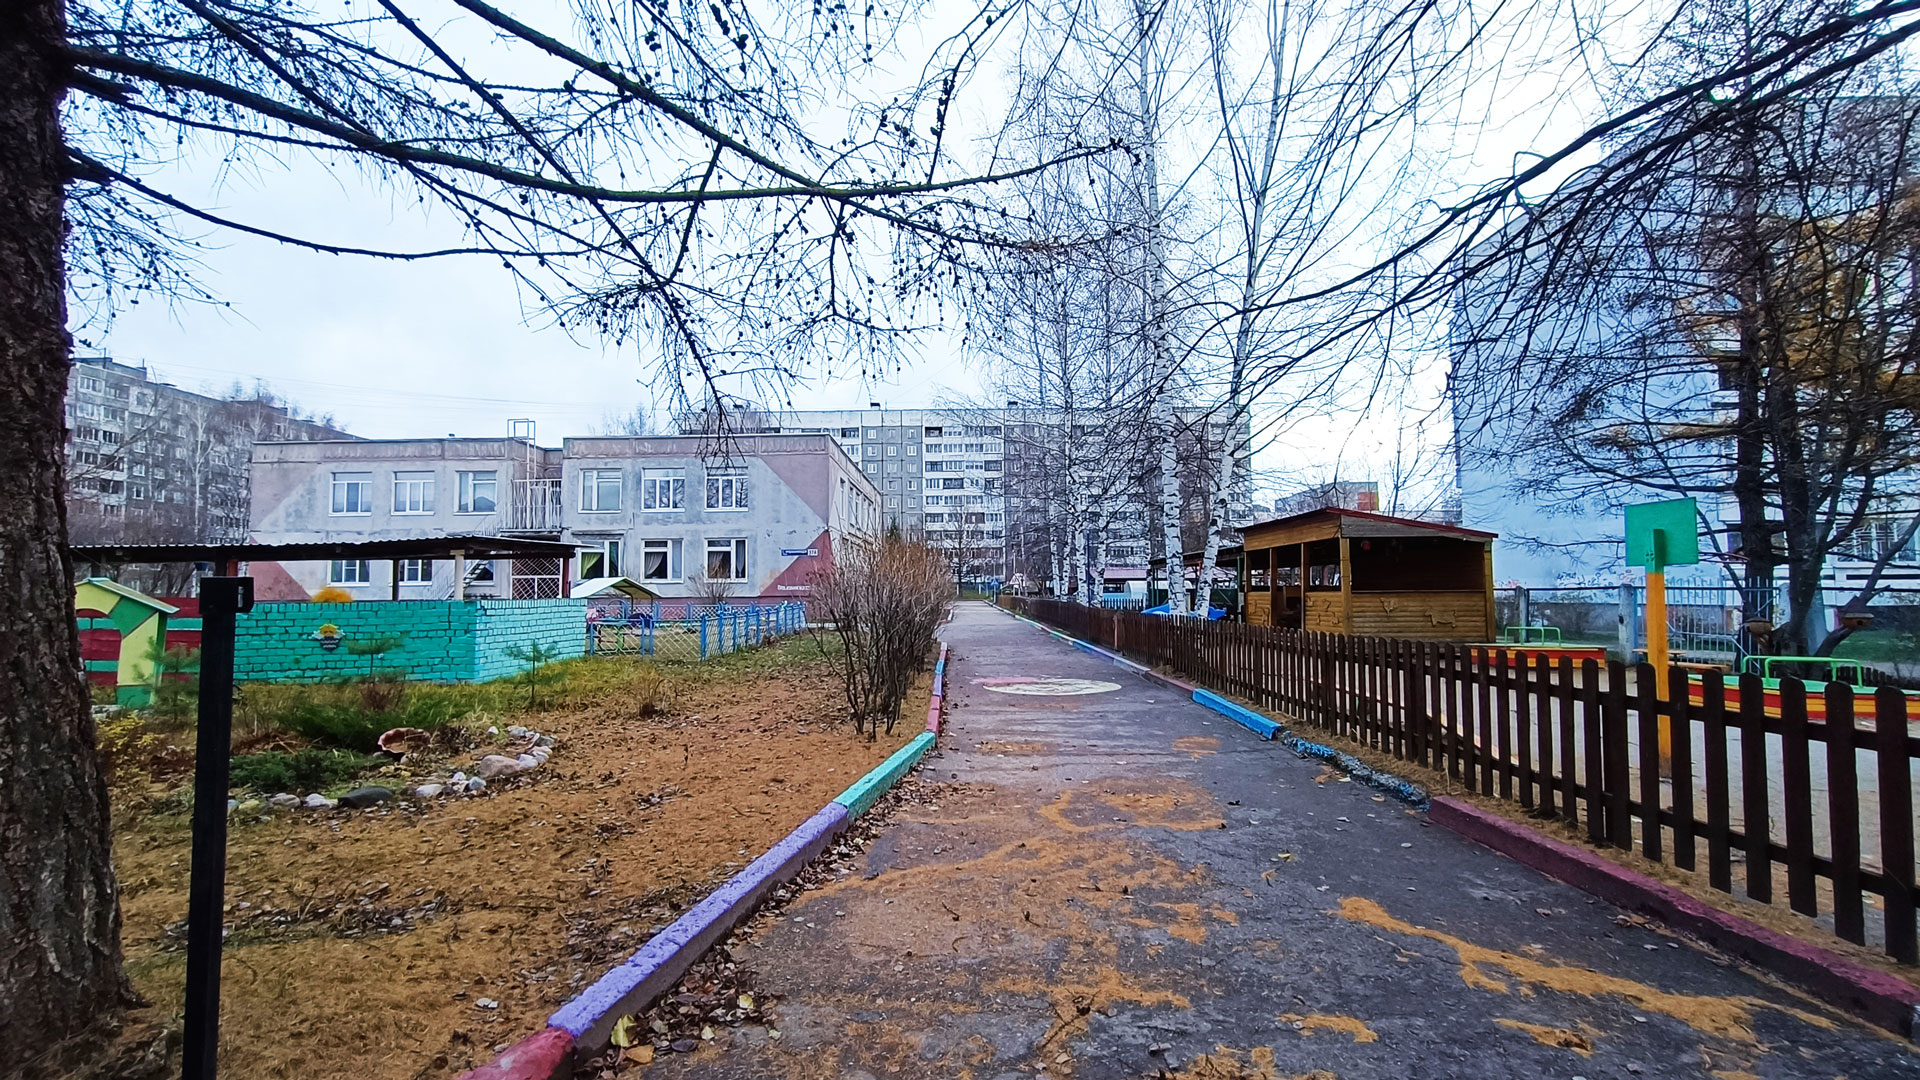 Детский сад 203 Ярославль: общий вид здания.